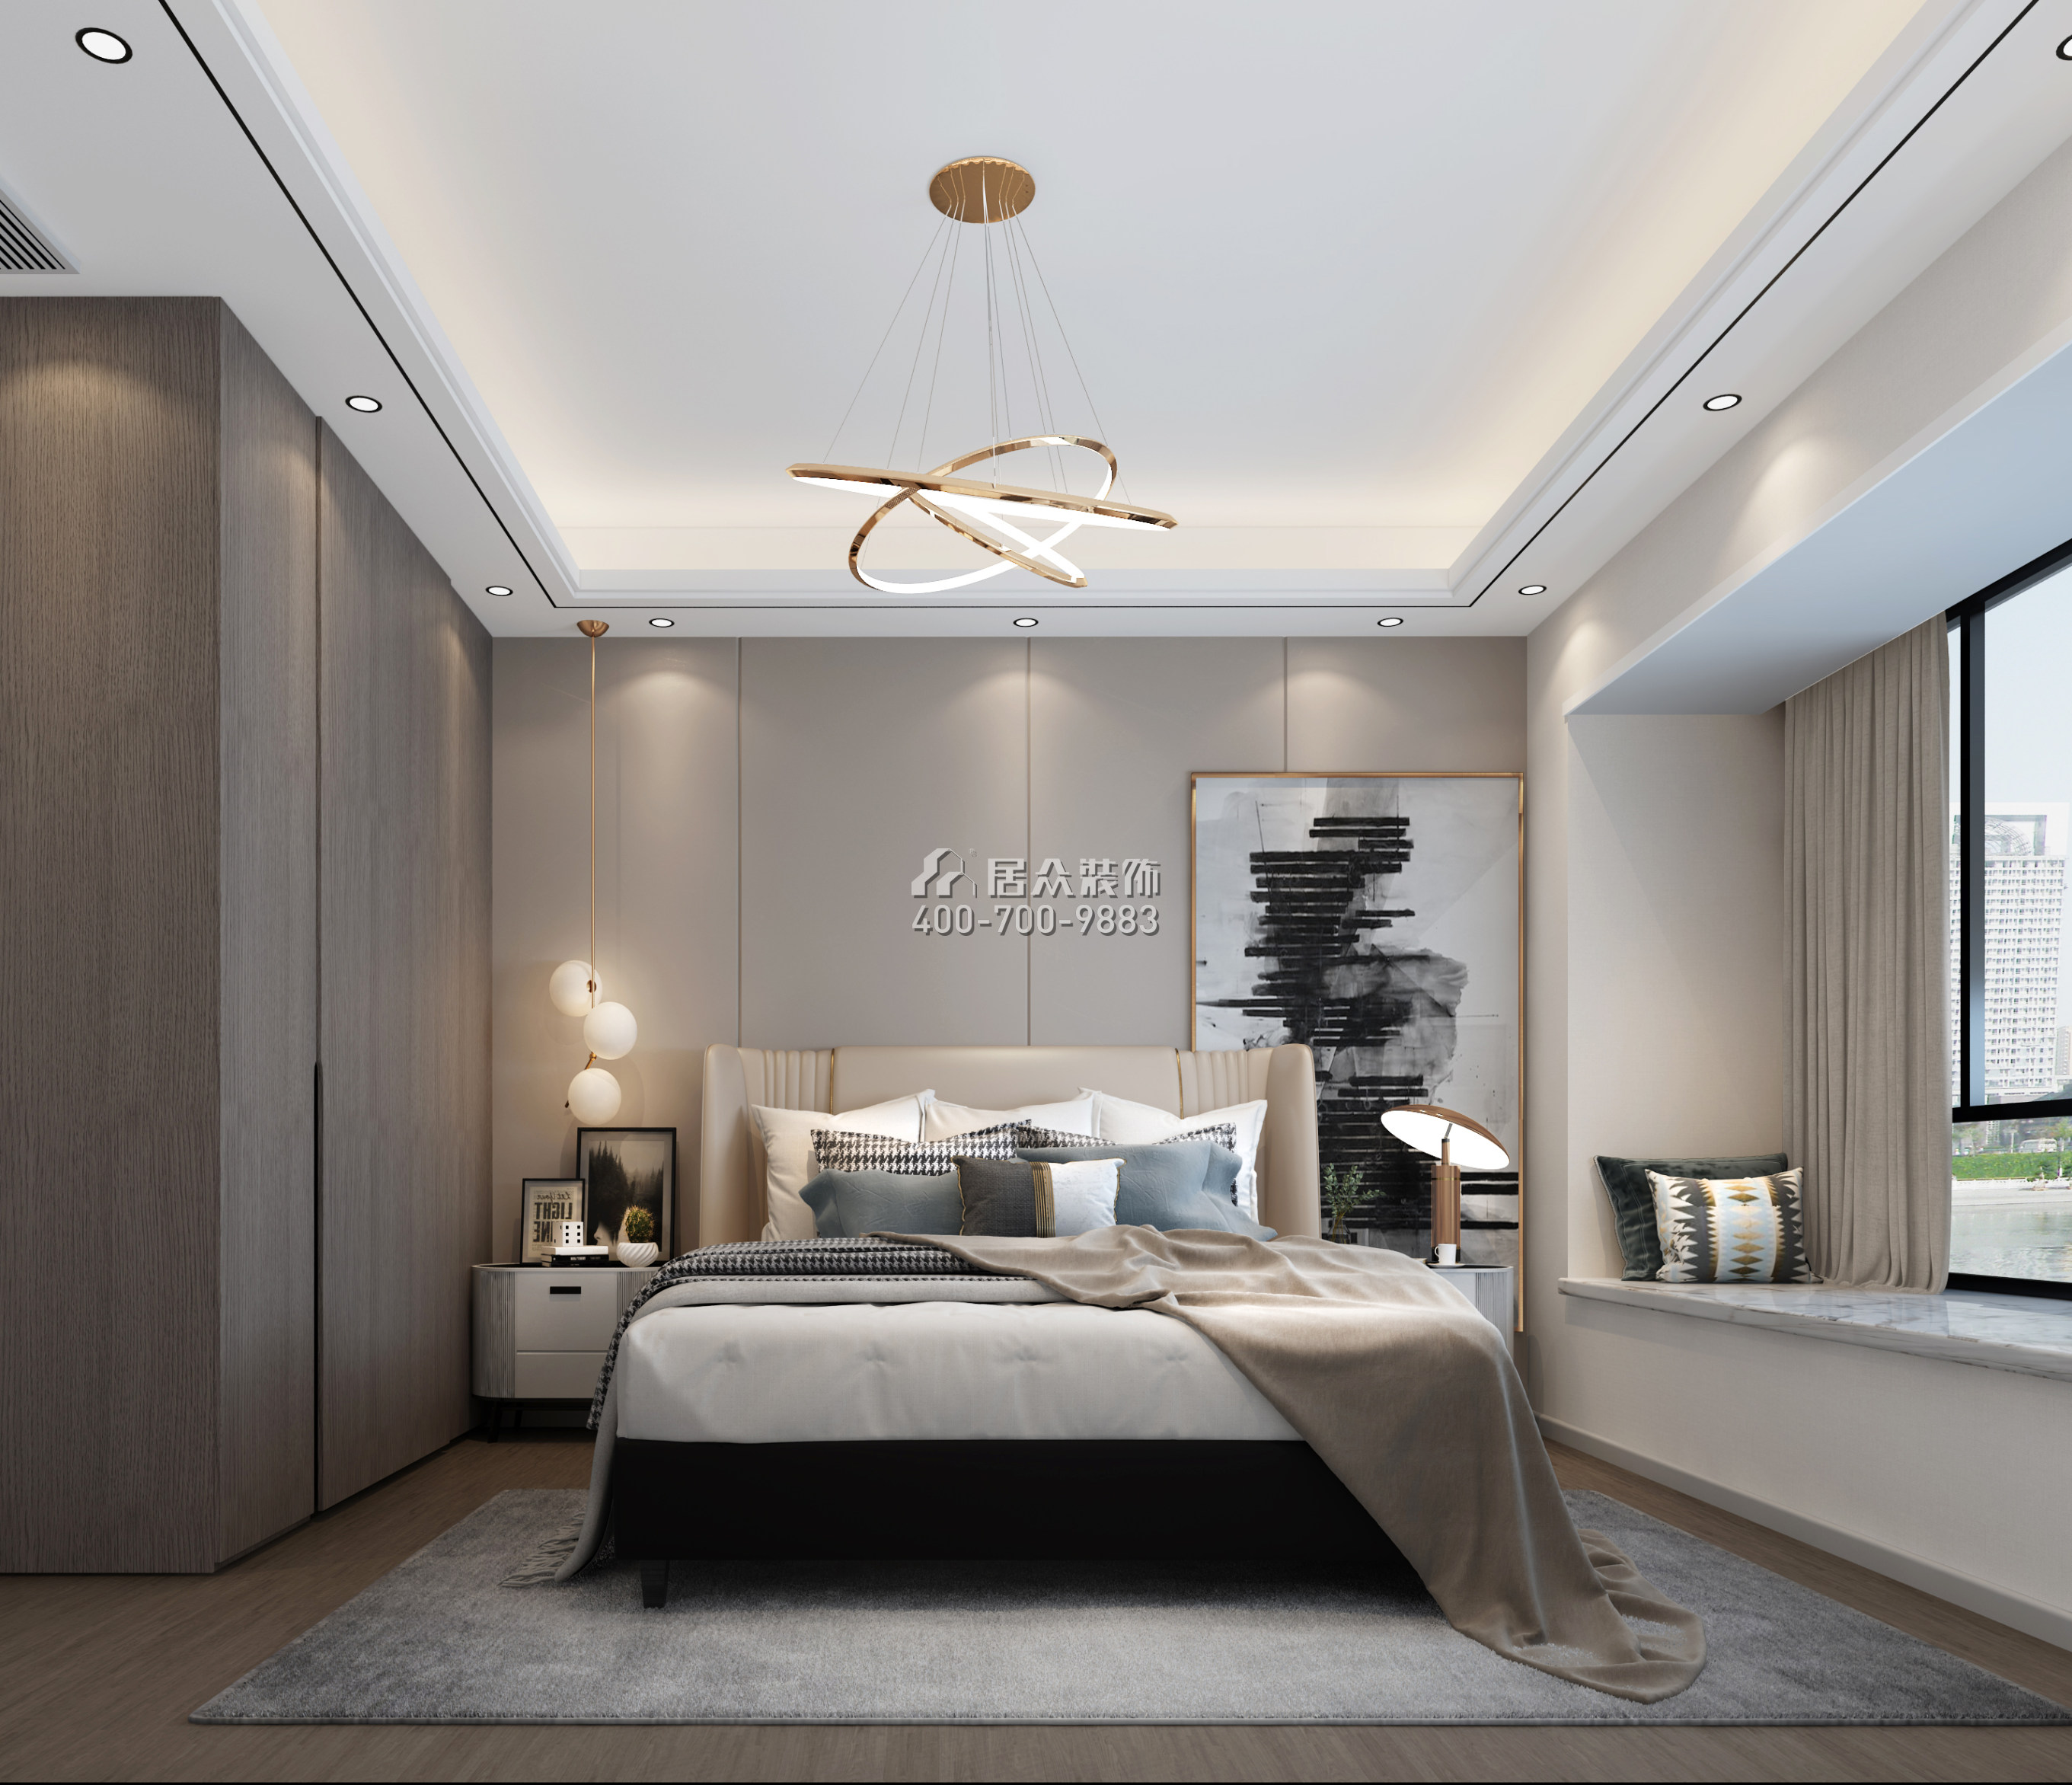 中信红树湾-三期300平方米现代简约风格平层户型卧室装修效果图